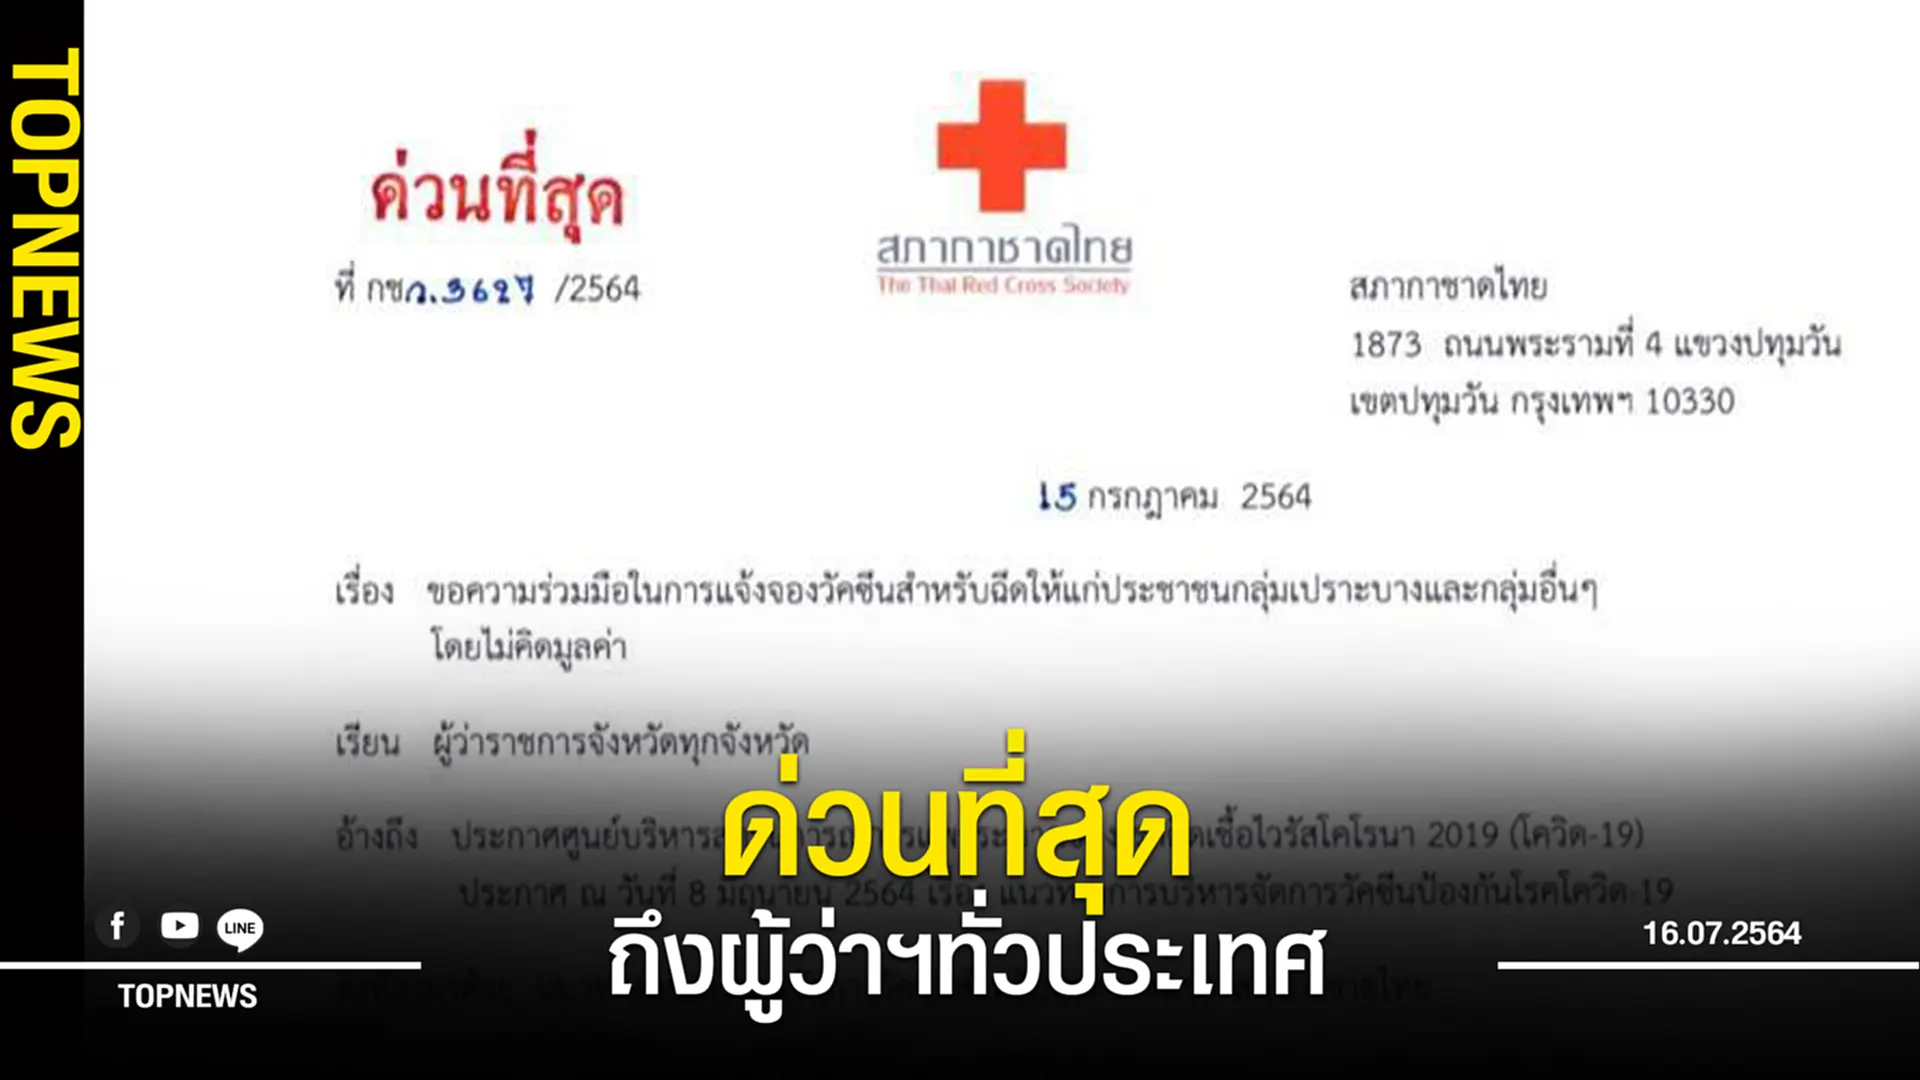 “สภากาชาดไทย” ร่อนหนังสือด่วน ถึงผู้ว่าฯทั่วประเทศ แผนกระจาย”วัคซีนโมเดอร์นา”